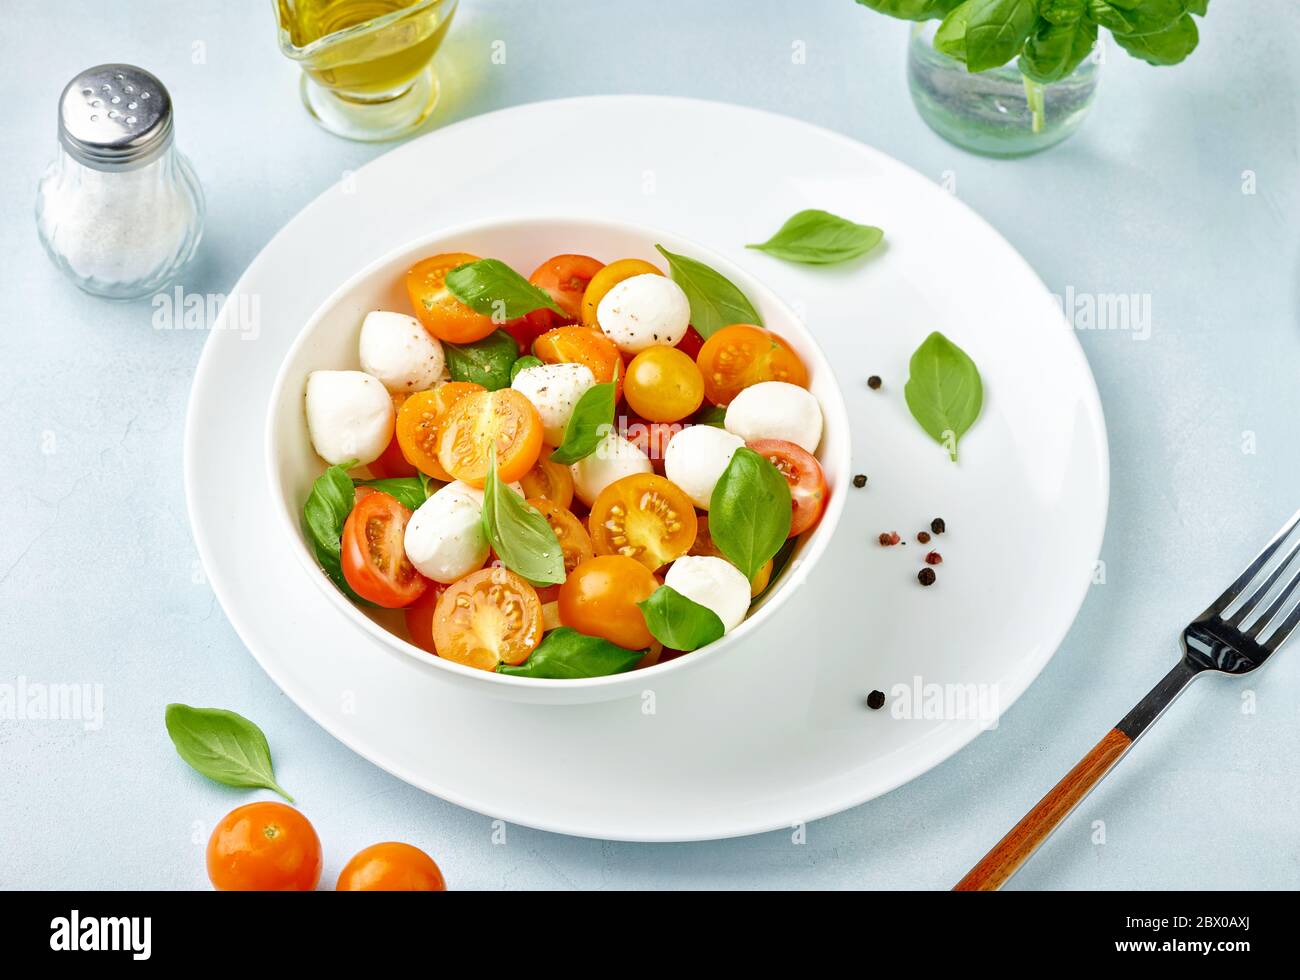 Salade Caprese avec tomates et mini fromage mozzarella dans un bol blanc sur une assiette blanche. Fromage mozzarella à la bocconcini avec feuilles de basilic. Banque D'Images